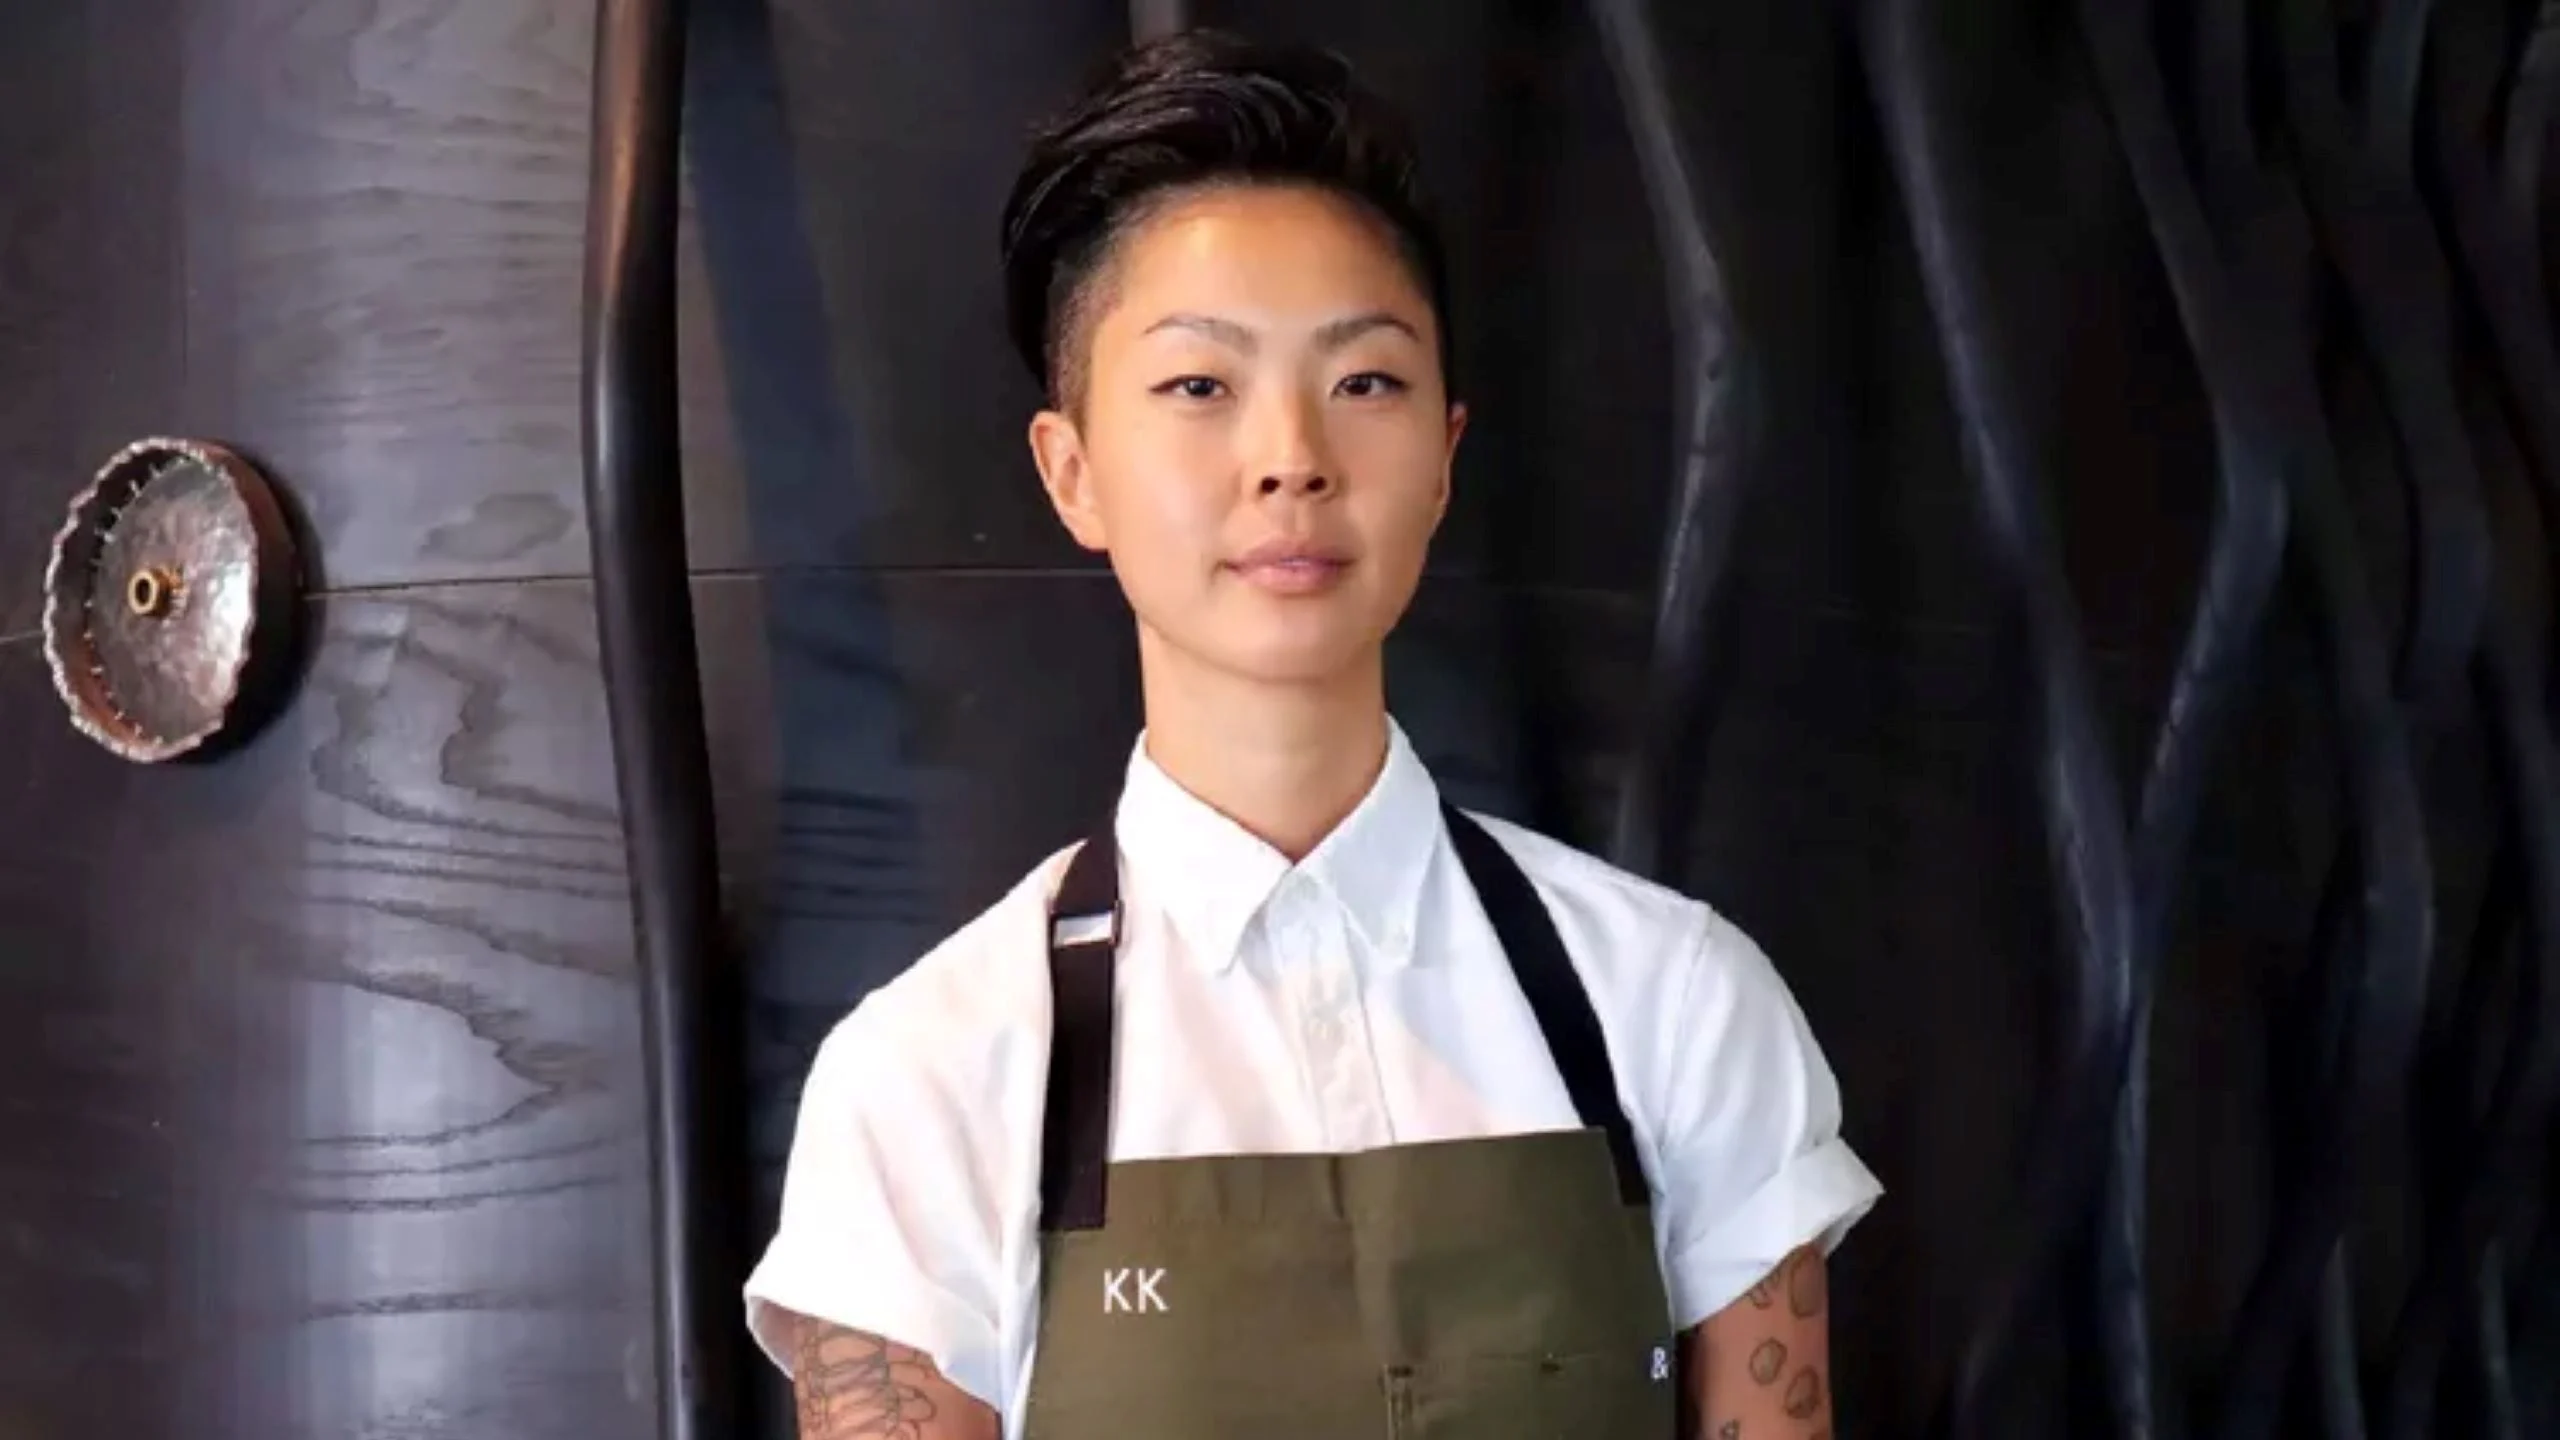 La nueva presentadora de Top Chef es la chef Kristen Kish